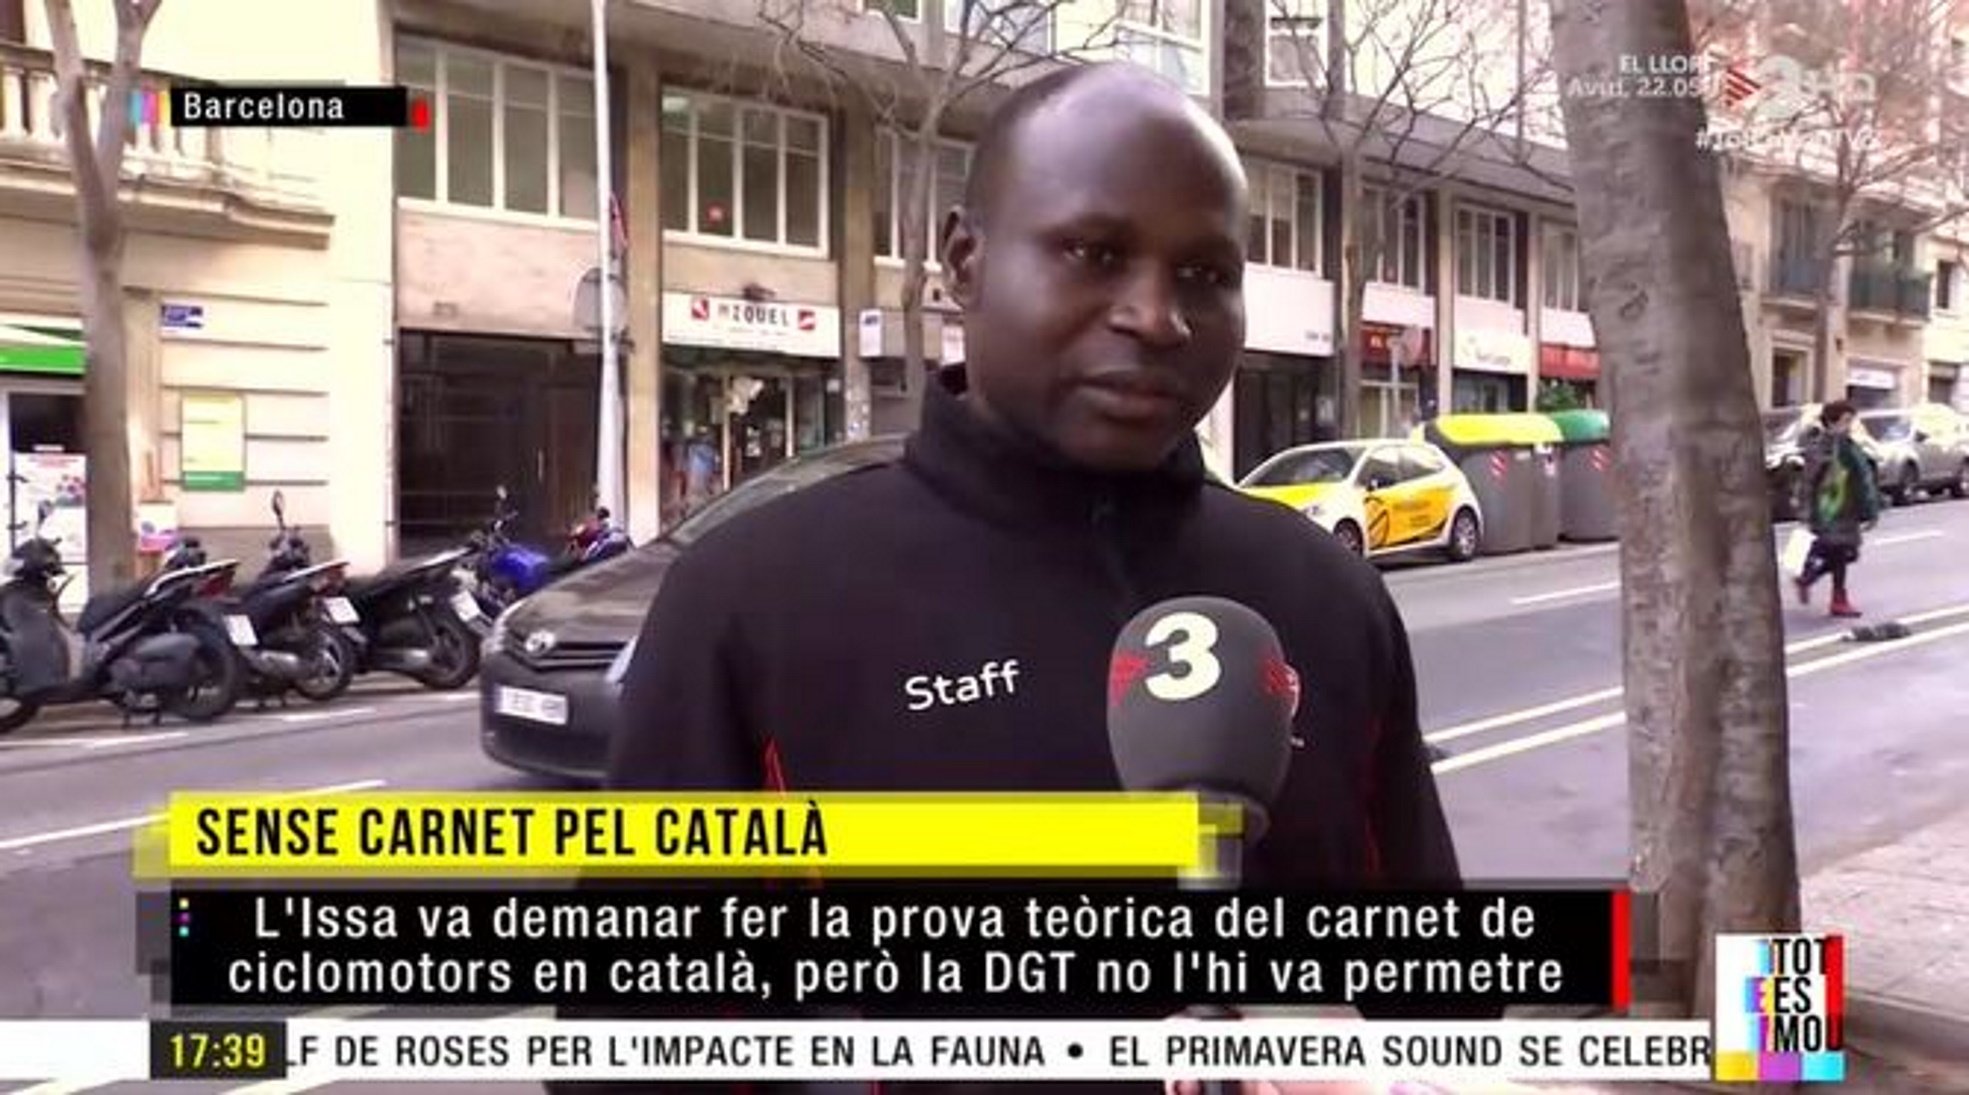 Prohíben a un joven el examen de ciclomotor porque sólo habla catalán: "Dicen que no"